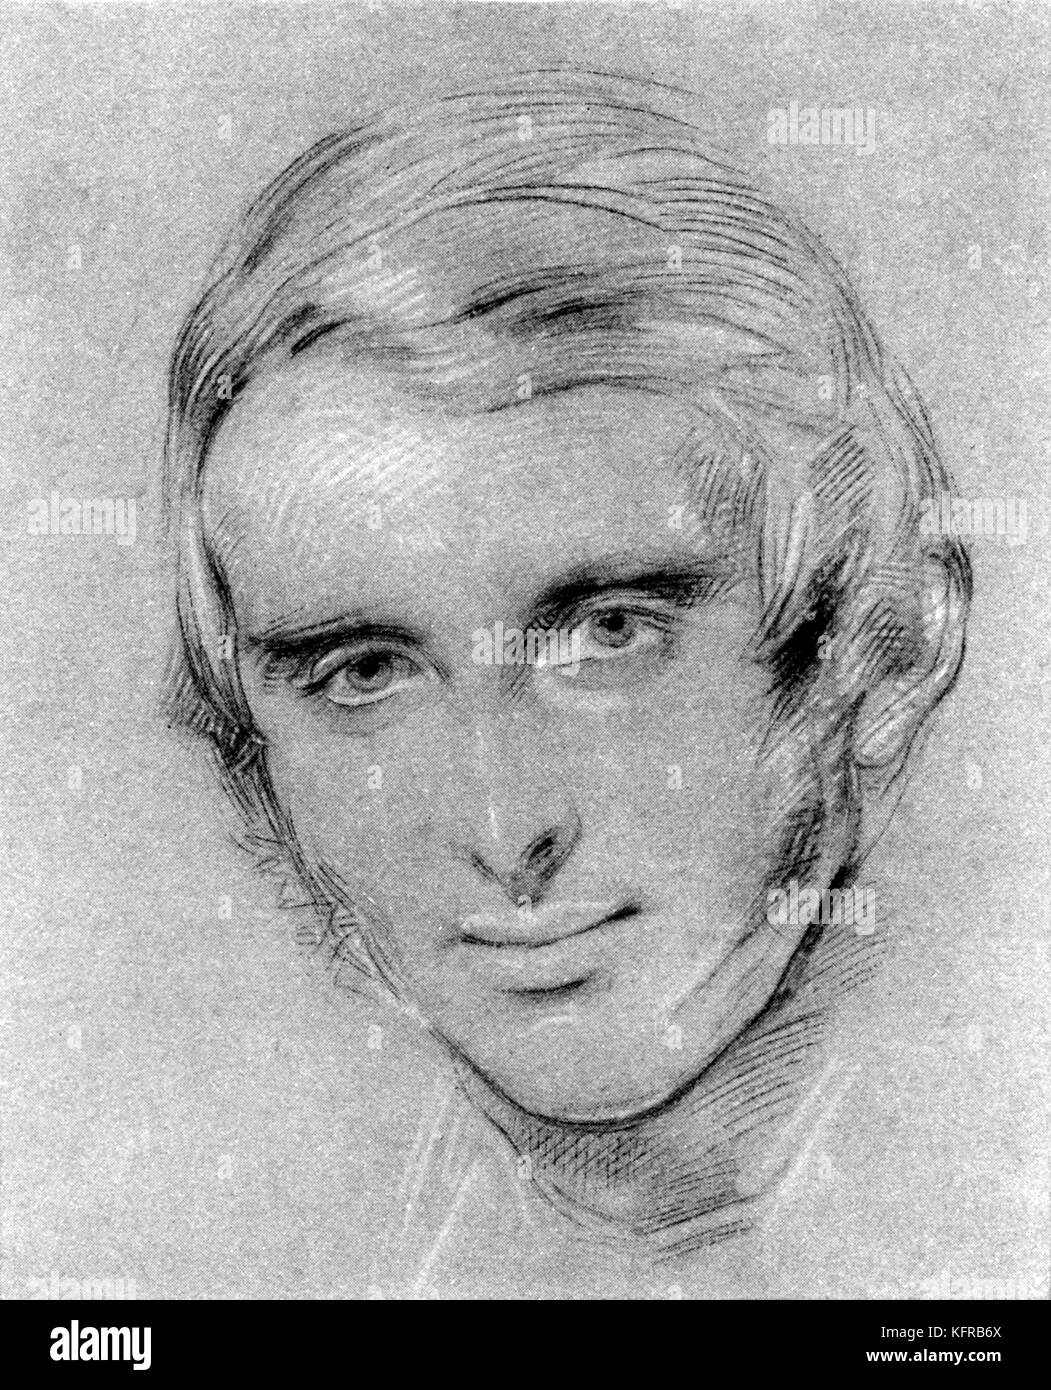 John Ruskin - Porträt, nach kreidezeichnung von George Richmond. Englischer Künstler, Kunstkritiker und sozialen Denker, vom 8. Februar 1819 - 20. Januar 1900. Stockfoto